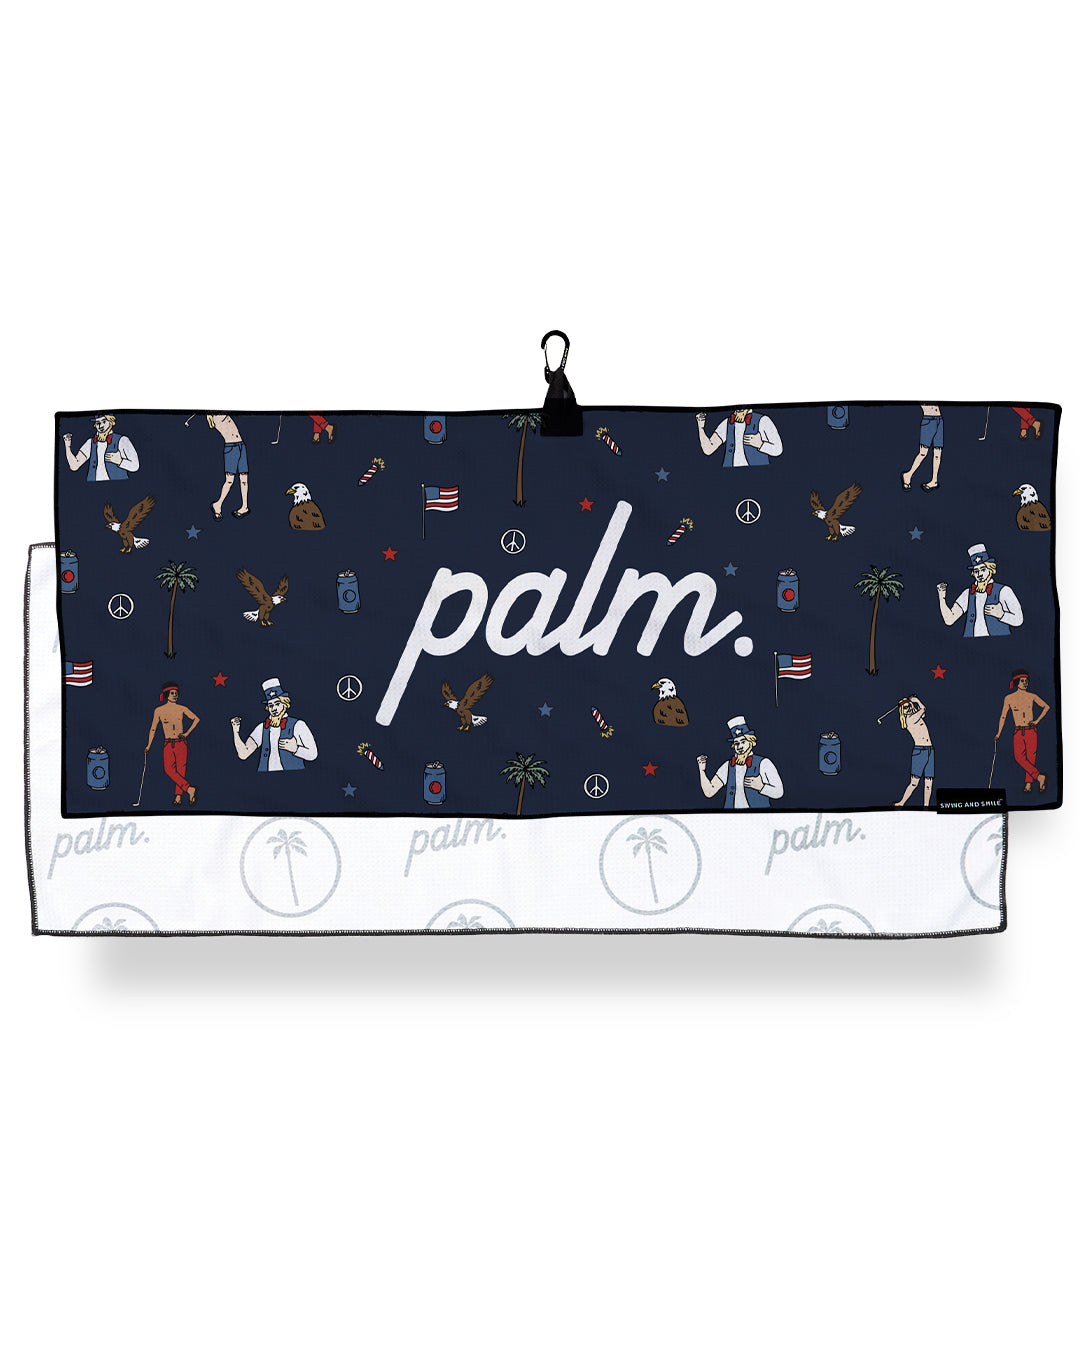 Foreth Towel - Palm Golf Co.